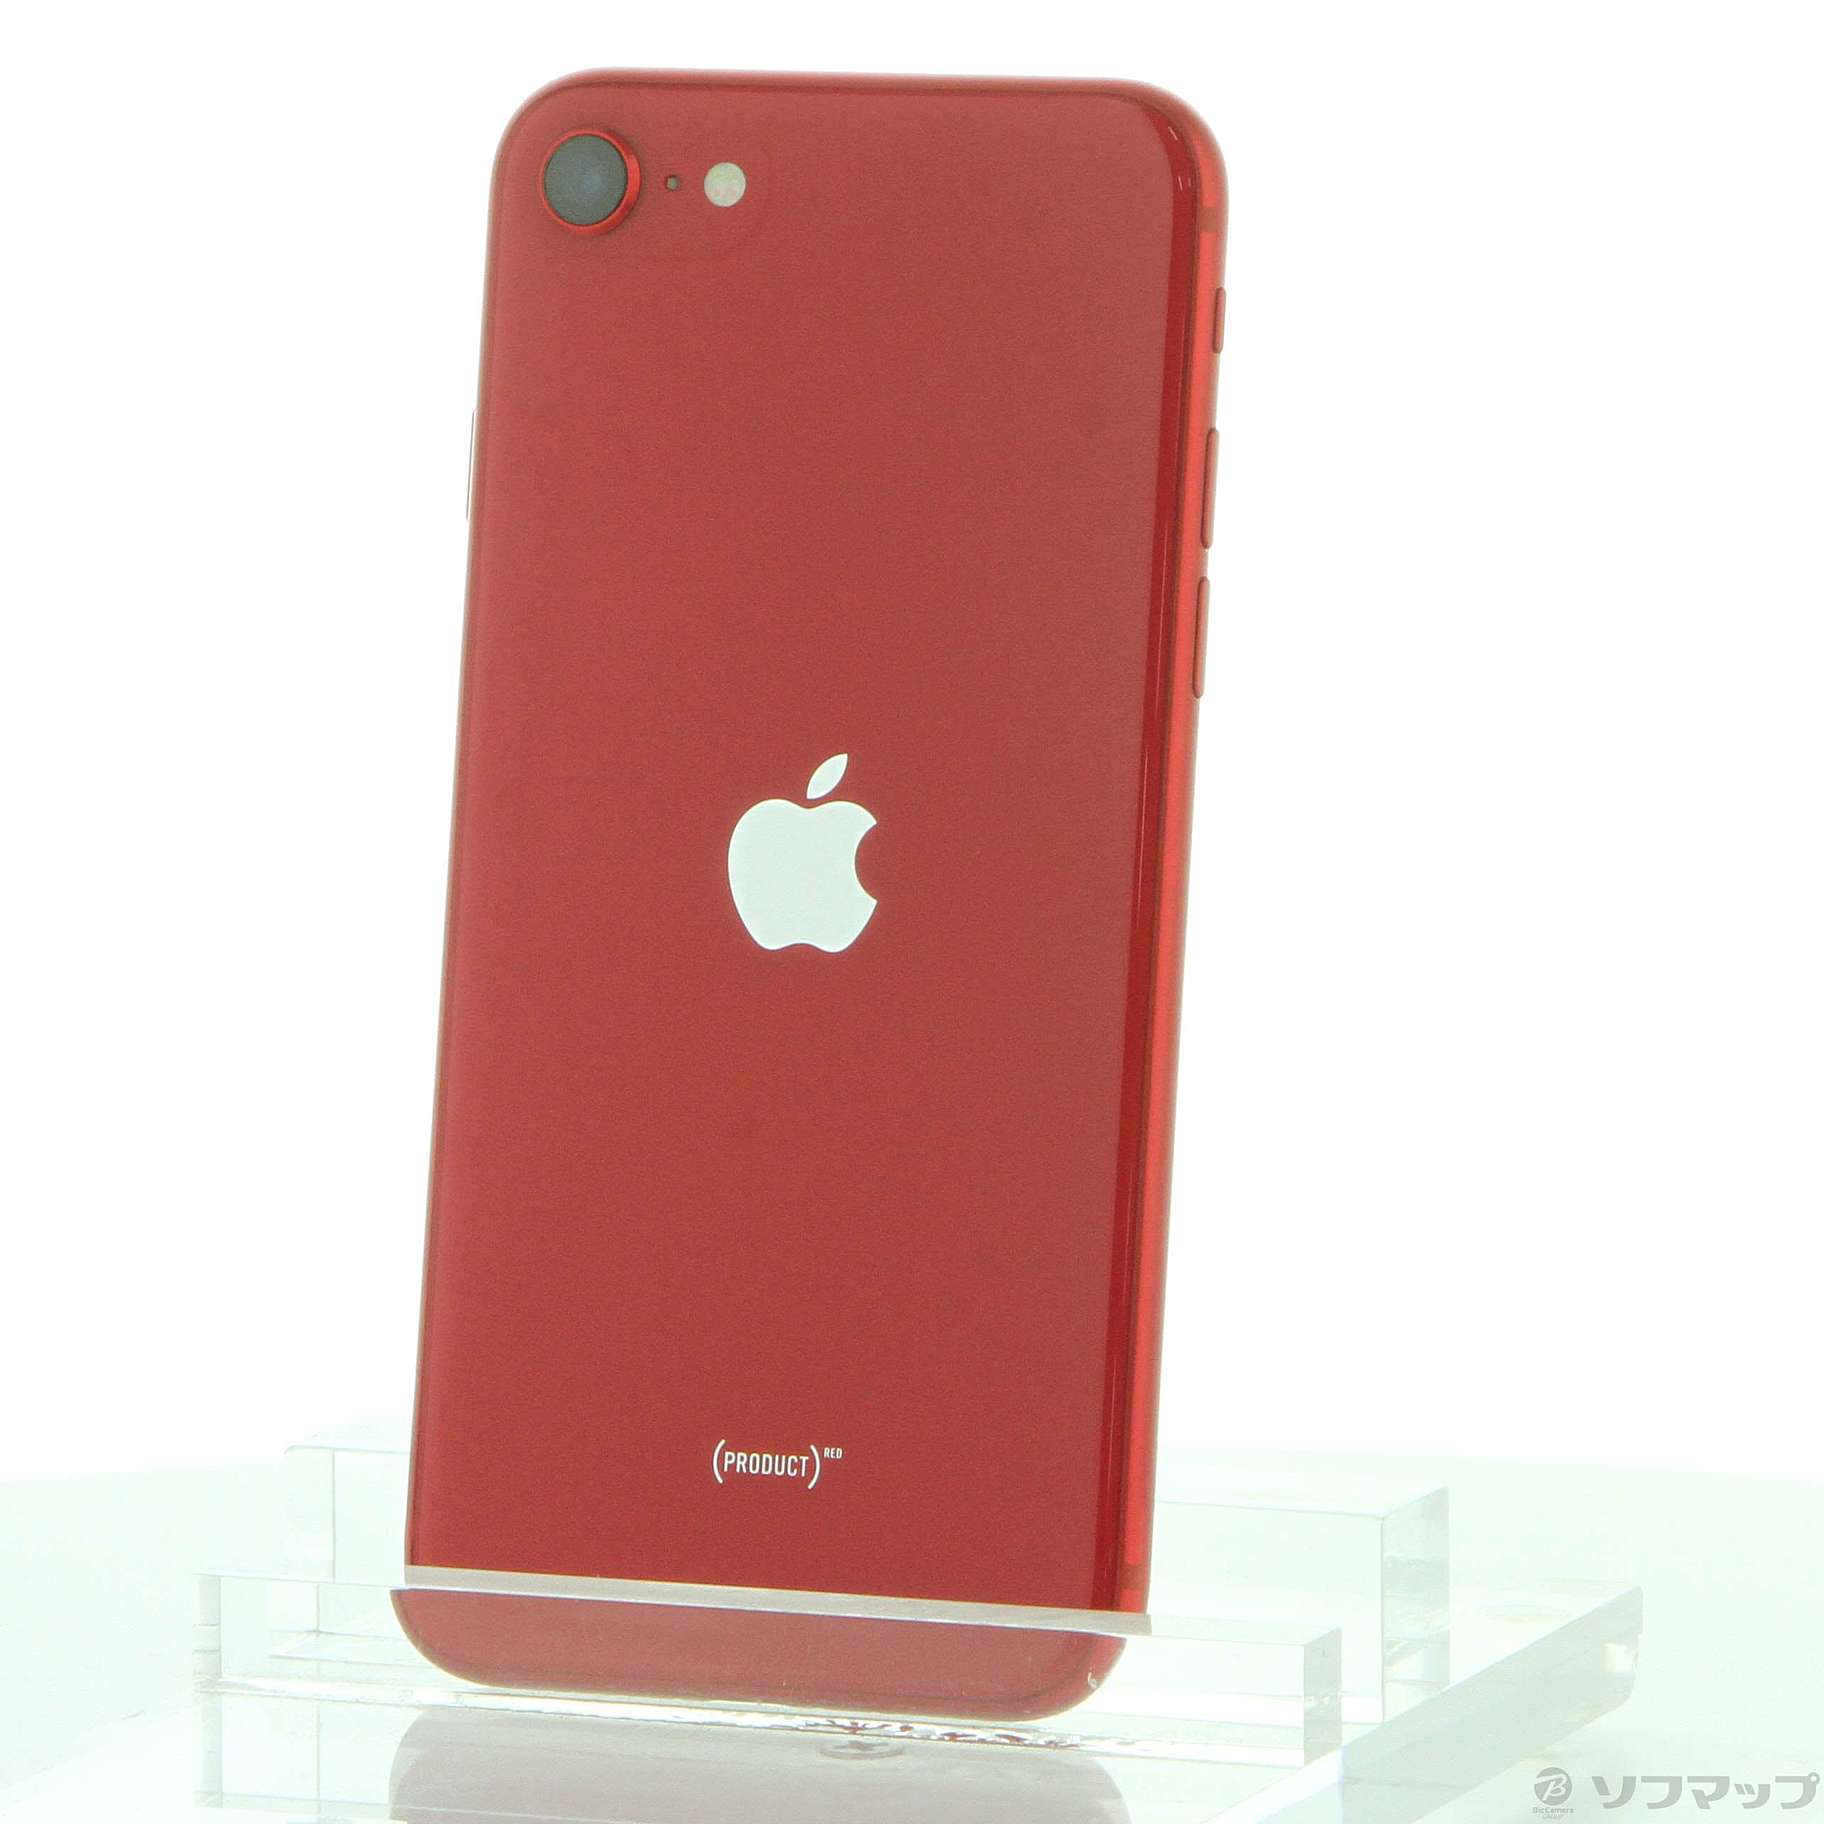 【日本買付】SoftBank MX9U2J/A iPhone SE(第2世代) 64GB レッド SB iPhone